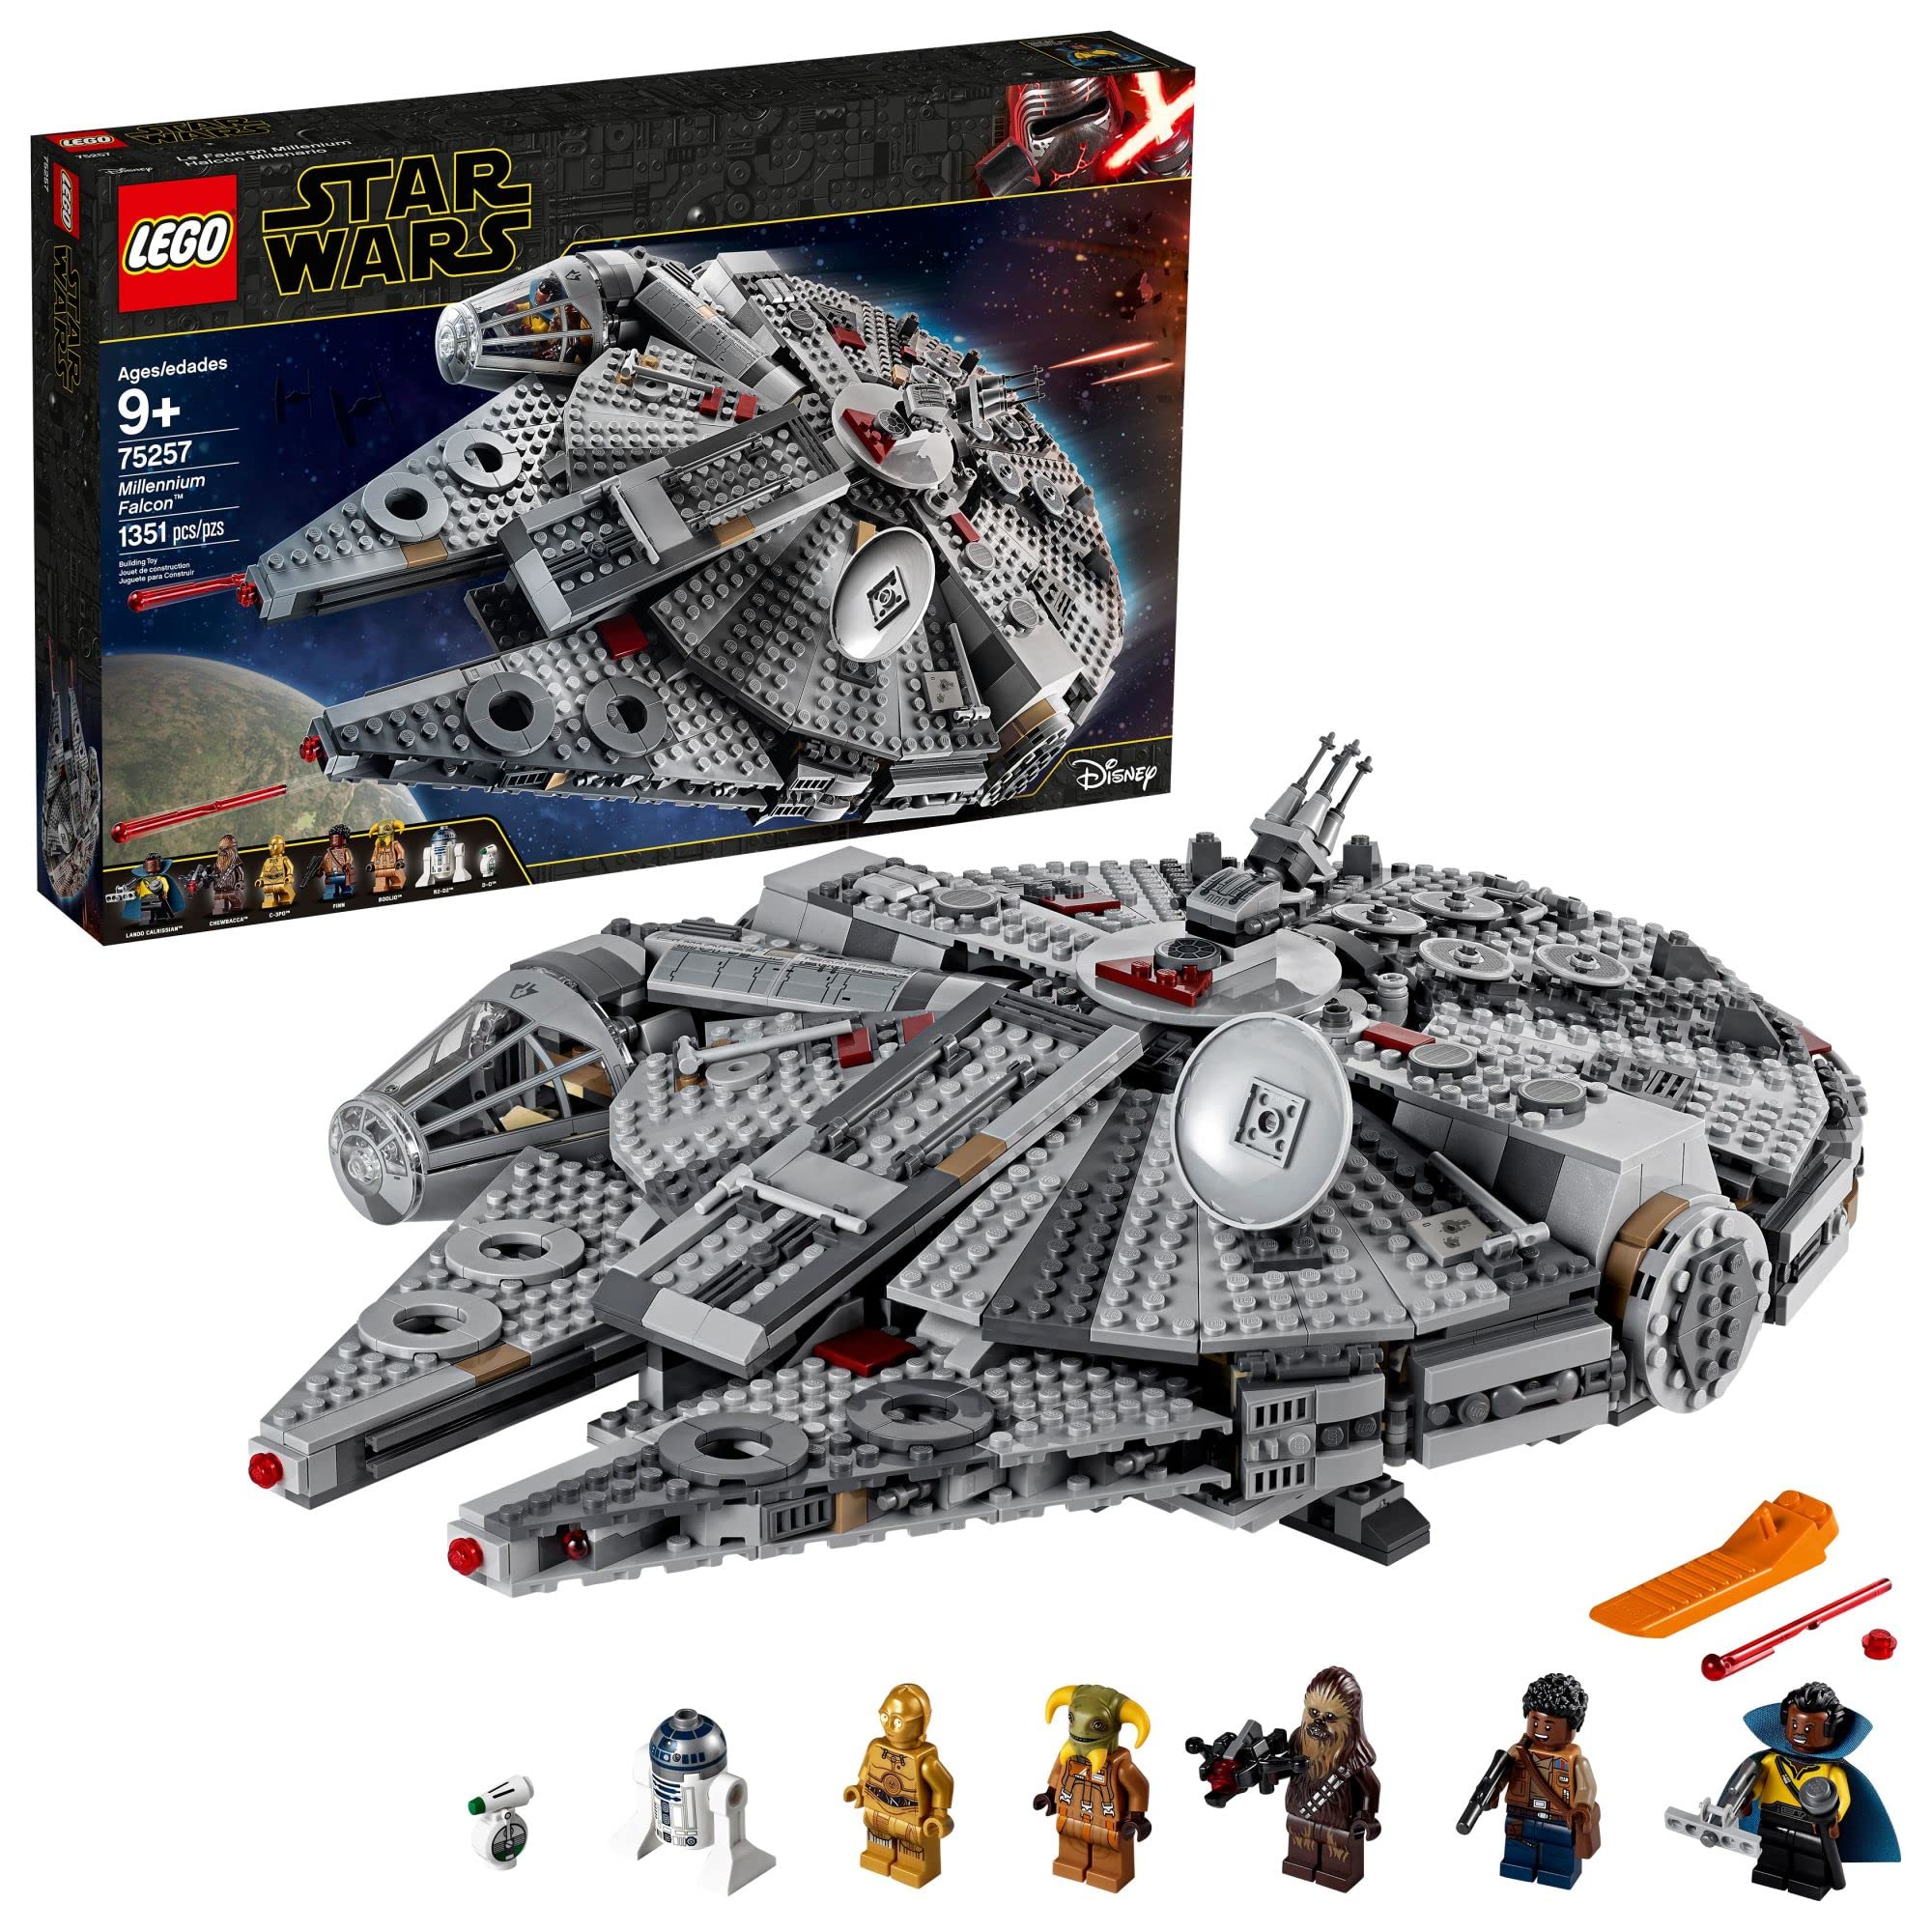 LEGO Star Wars : The Rise of Skywalker Millennium Falcon 75257 Kit de construction de modèle de vaisseau spatial et figurines (1 351 pièces)